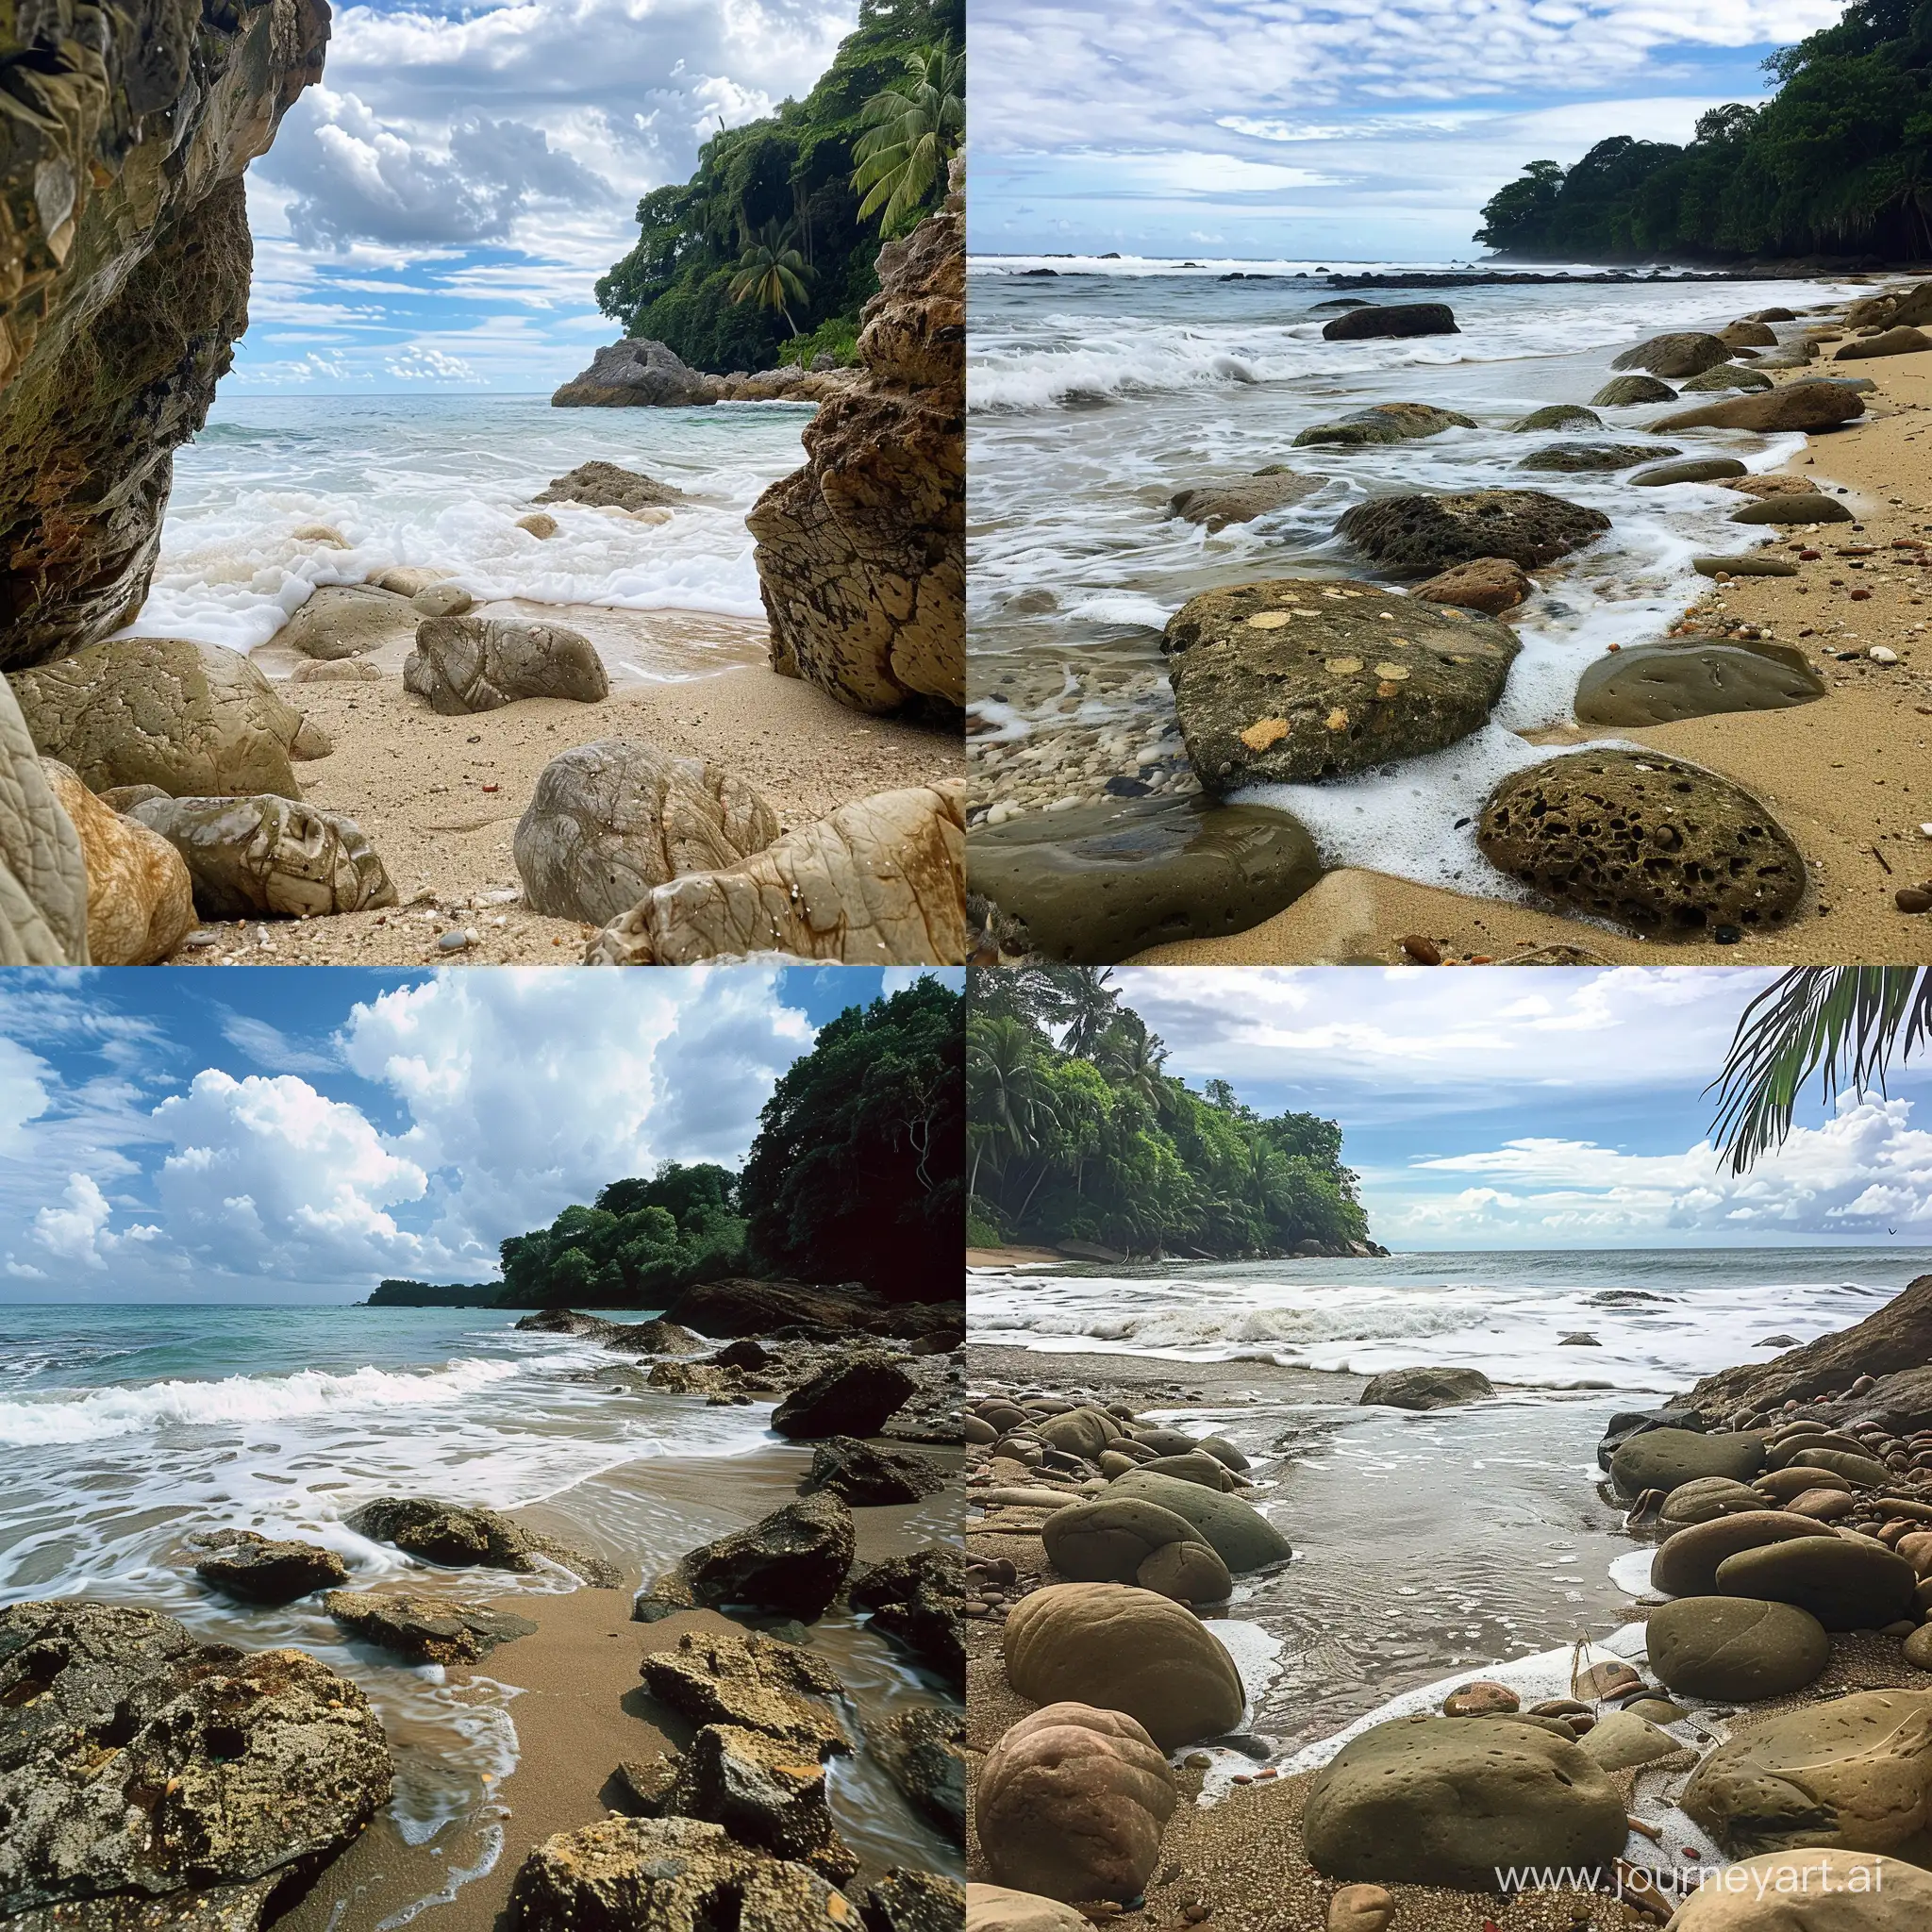 Felsiger Strand, zwischen Steinen auch Sand zu sehen, Meer im Hintergrund, seichte Wellen mit Schaum, im Anschnitt ist ein Dschungel / Wald zu sehen. Teils bewölkter Himmel